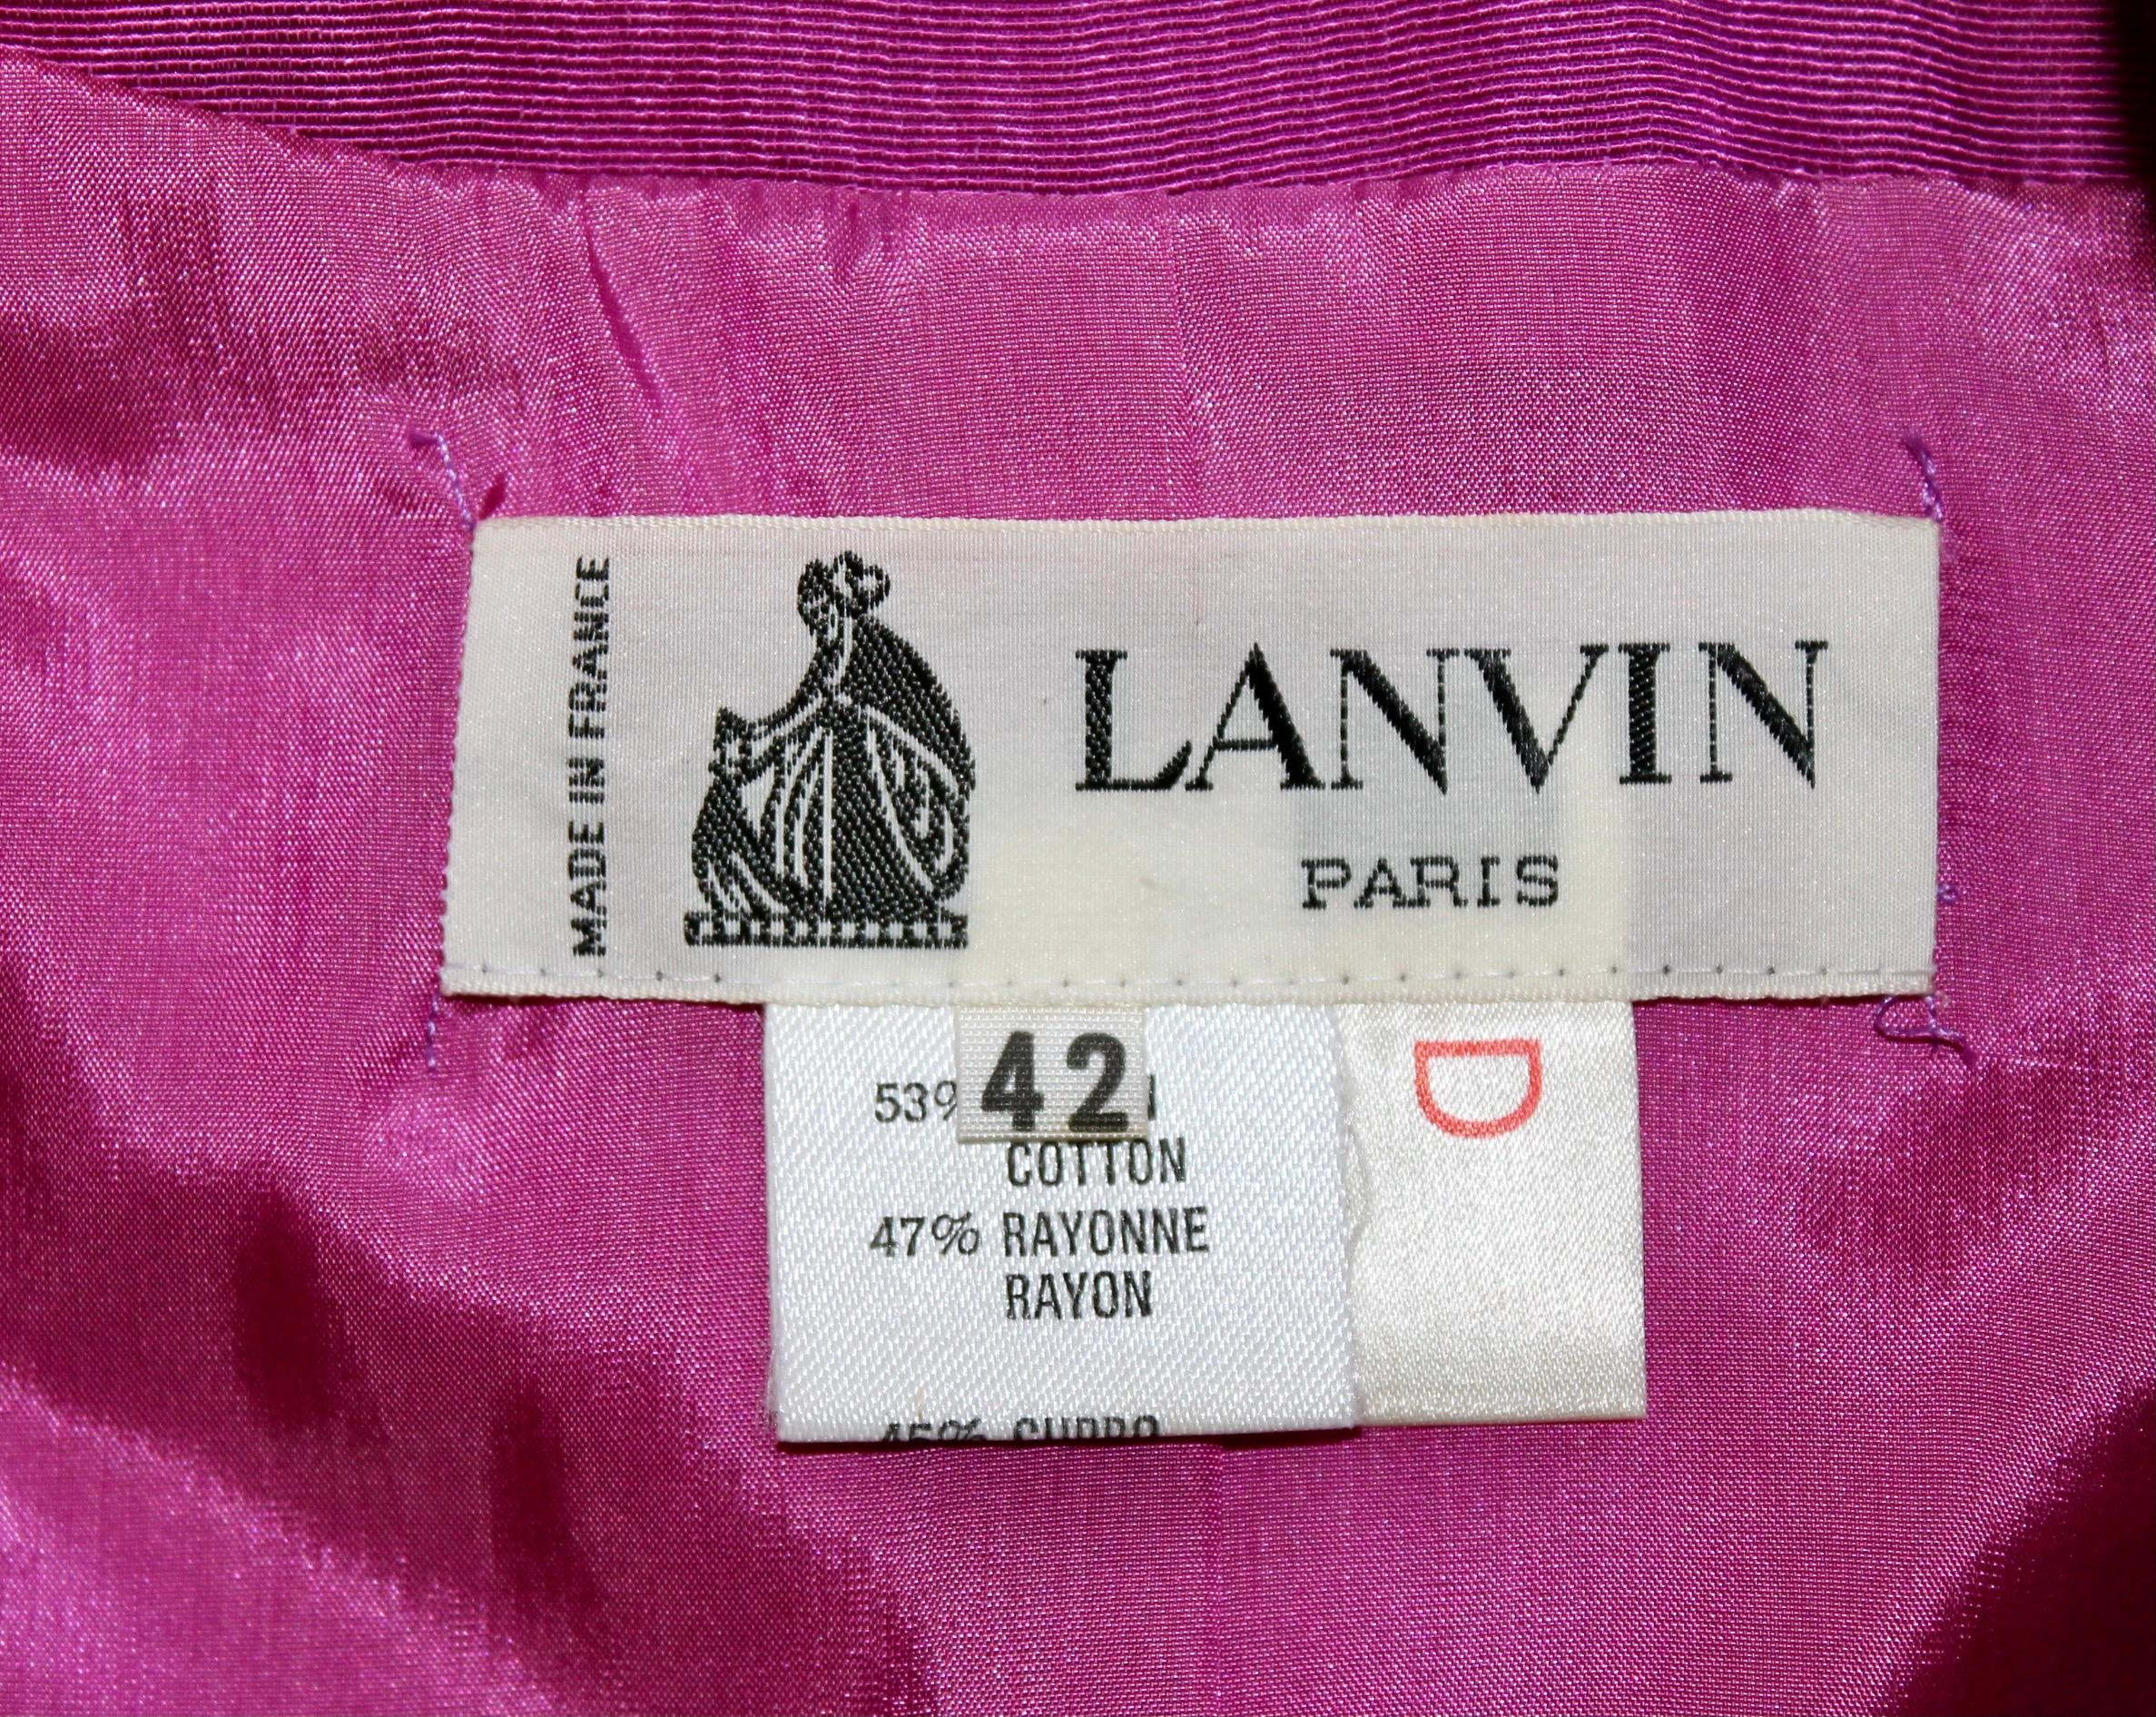 Lanvin, Paris Magenta Moire Suit For Sale 3